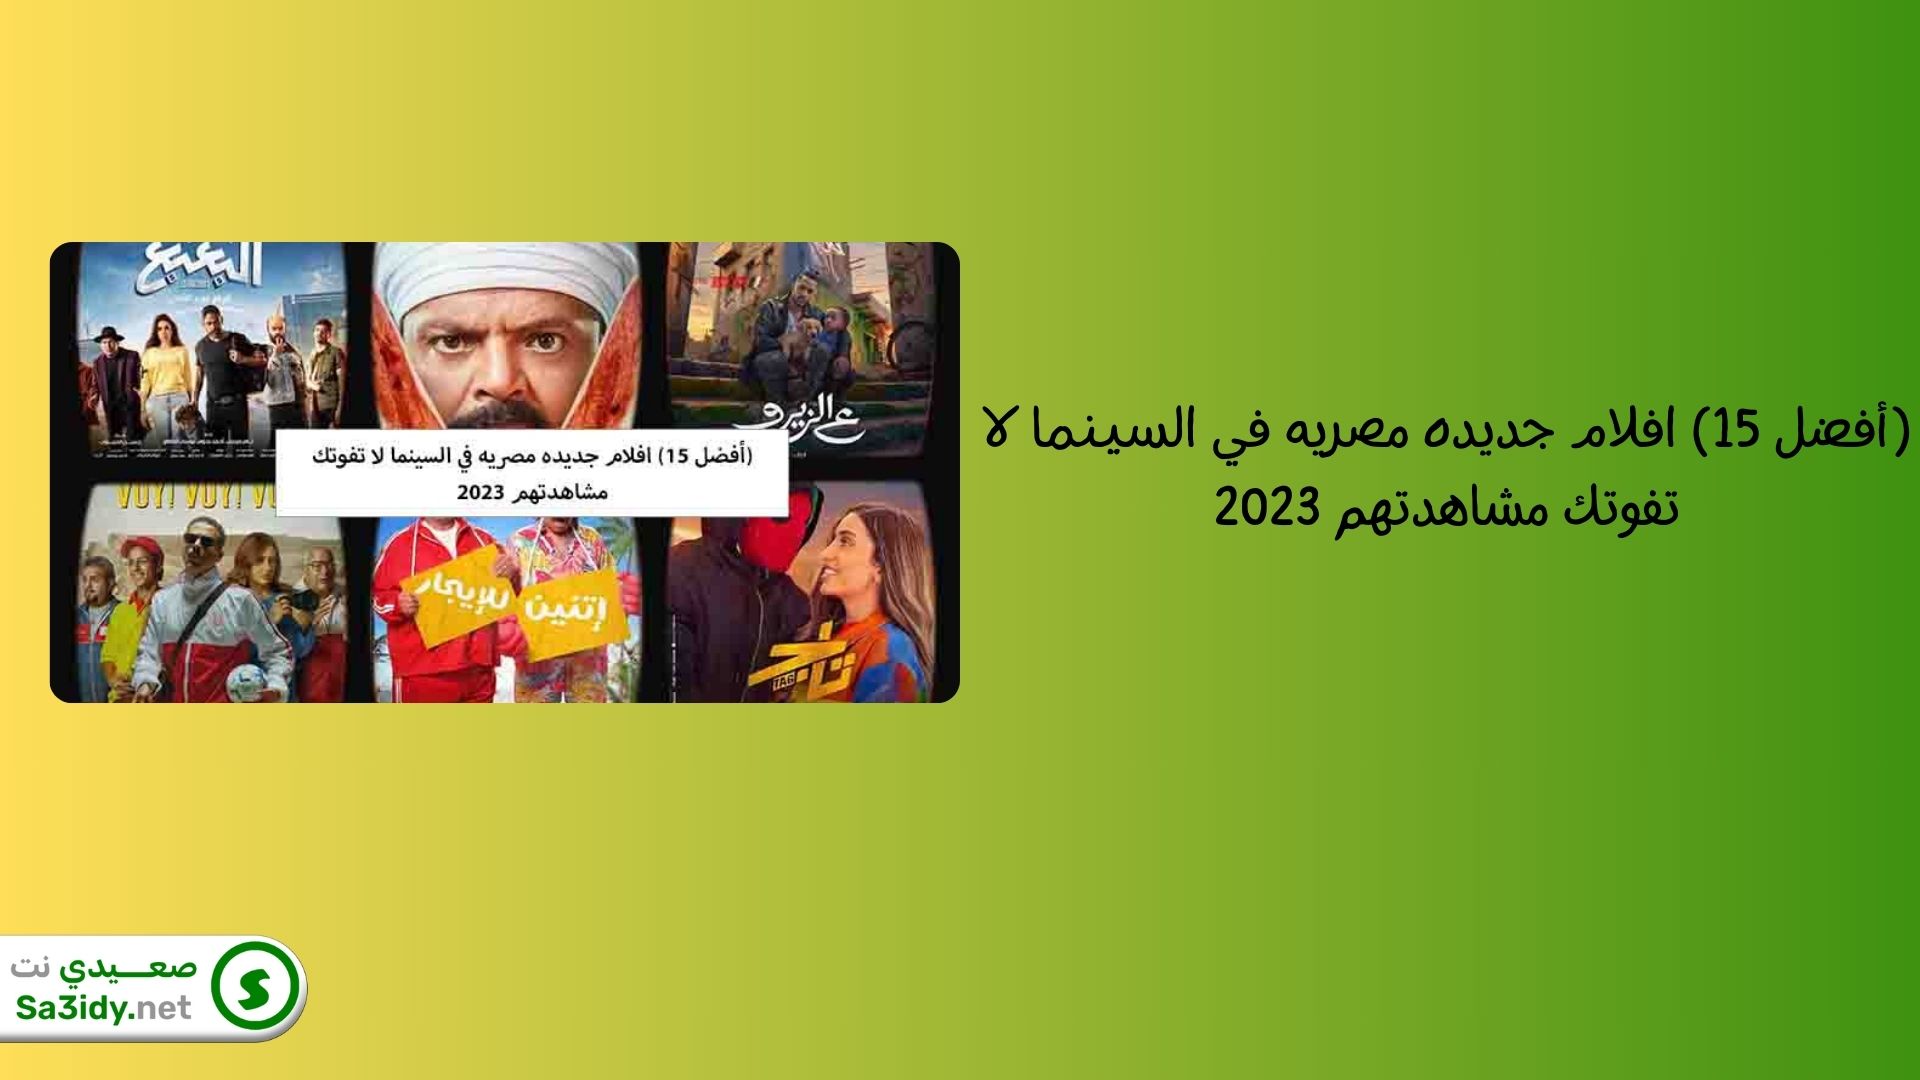 (أفضل 15) افلام جديده مصريه في السينما لا تفوتك مشاهدتهم 2023